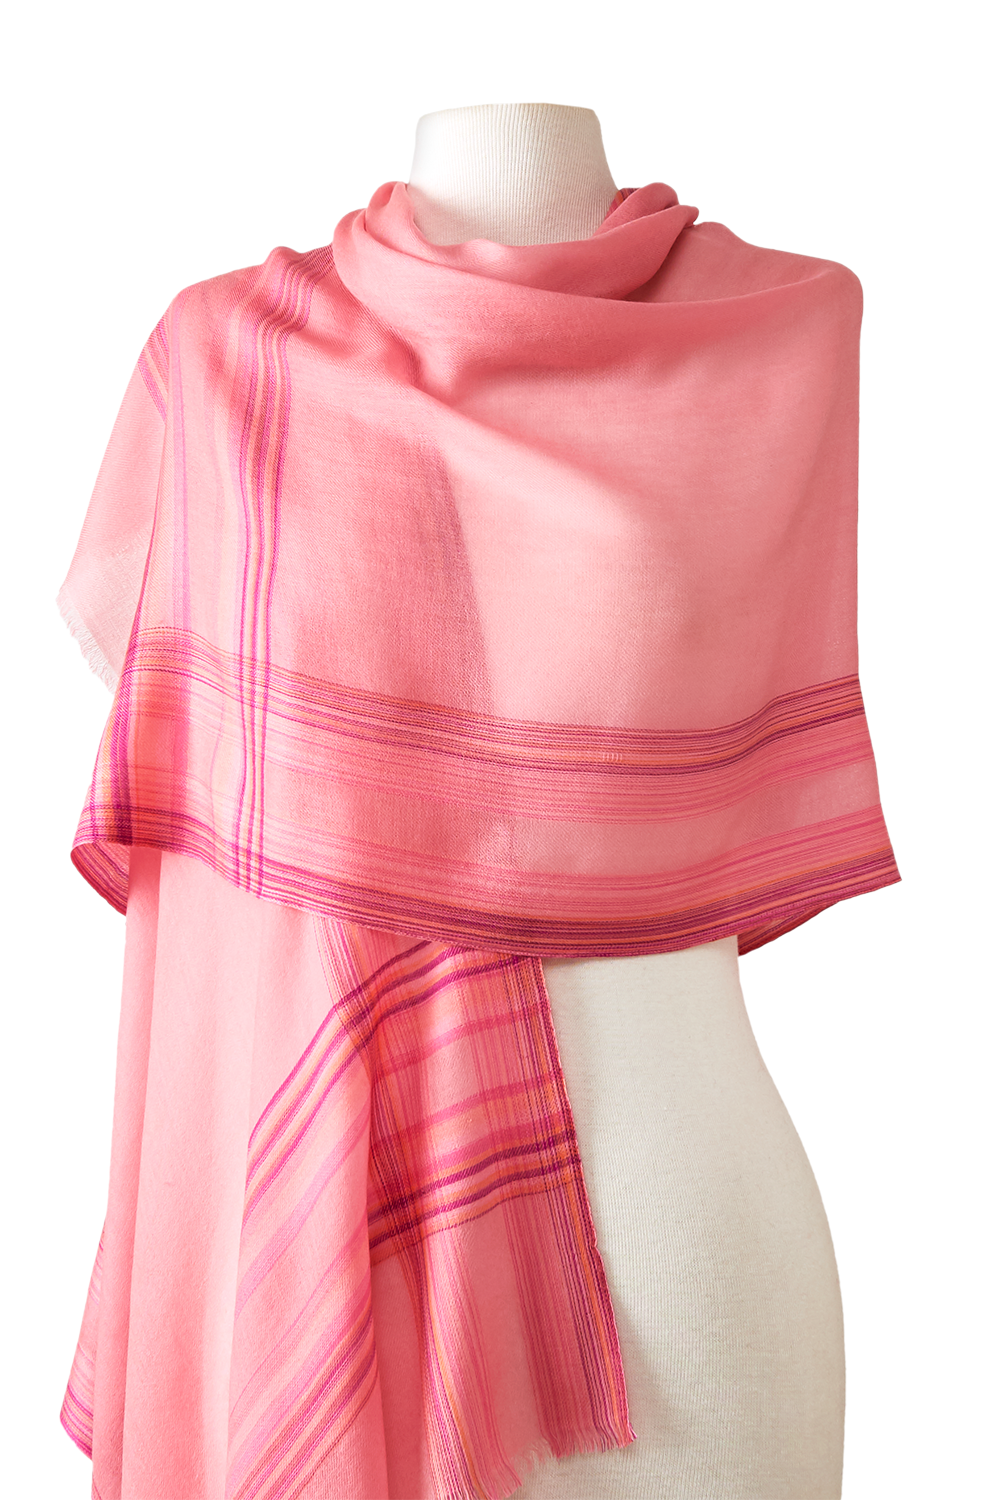 Himalayan cashmere pink stripes 